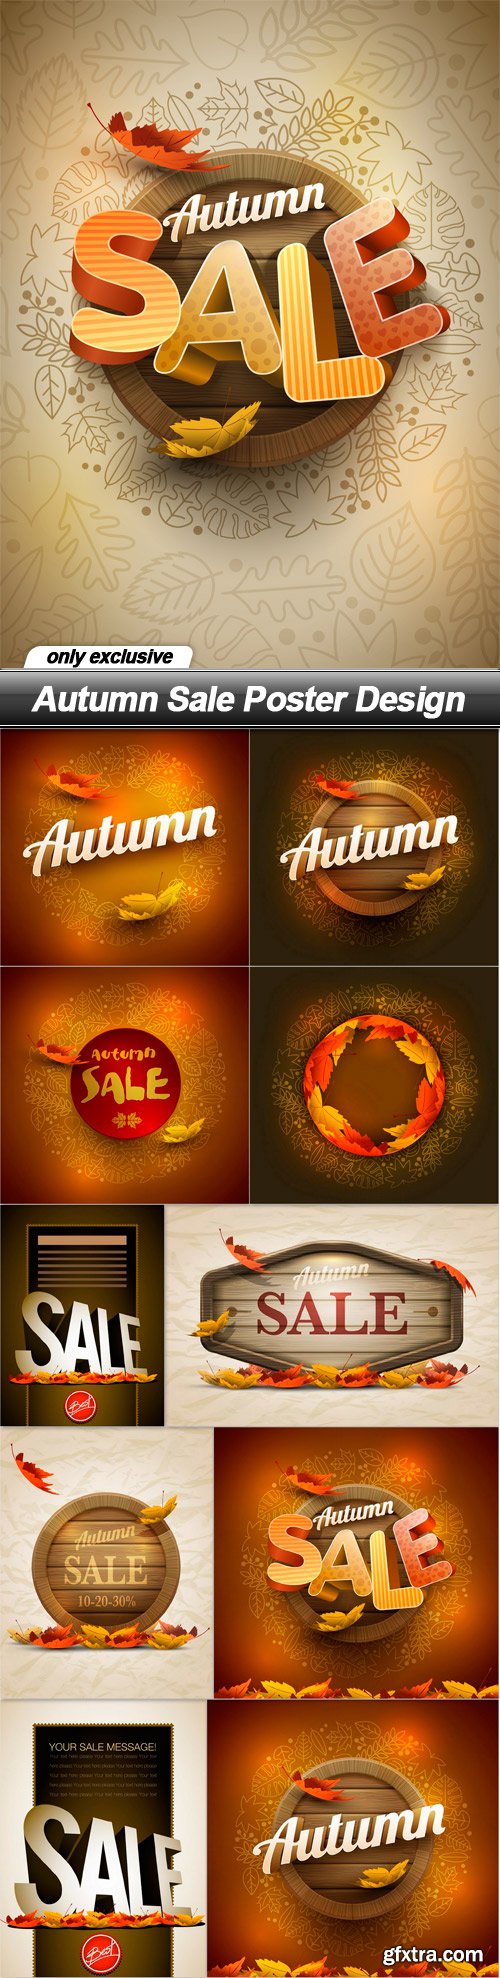 Autumn Sale Poster Design - 11 EPS